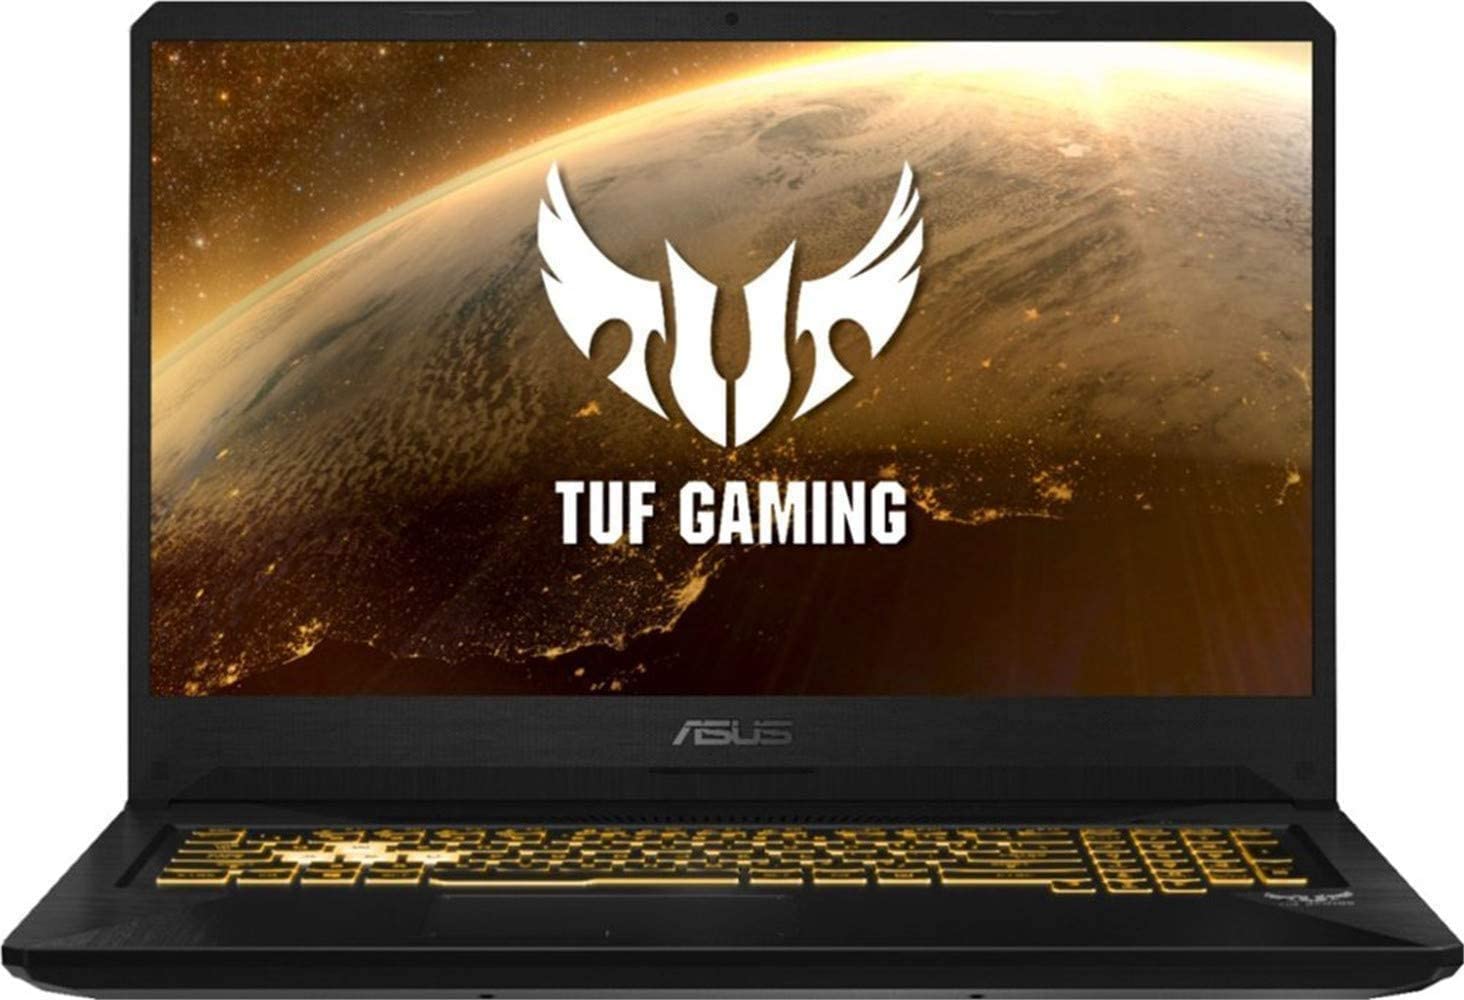  2019 ASUS TUF 17.3" FHD Gaming Laptop Computer